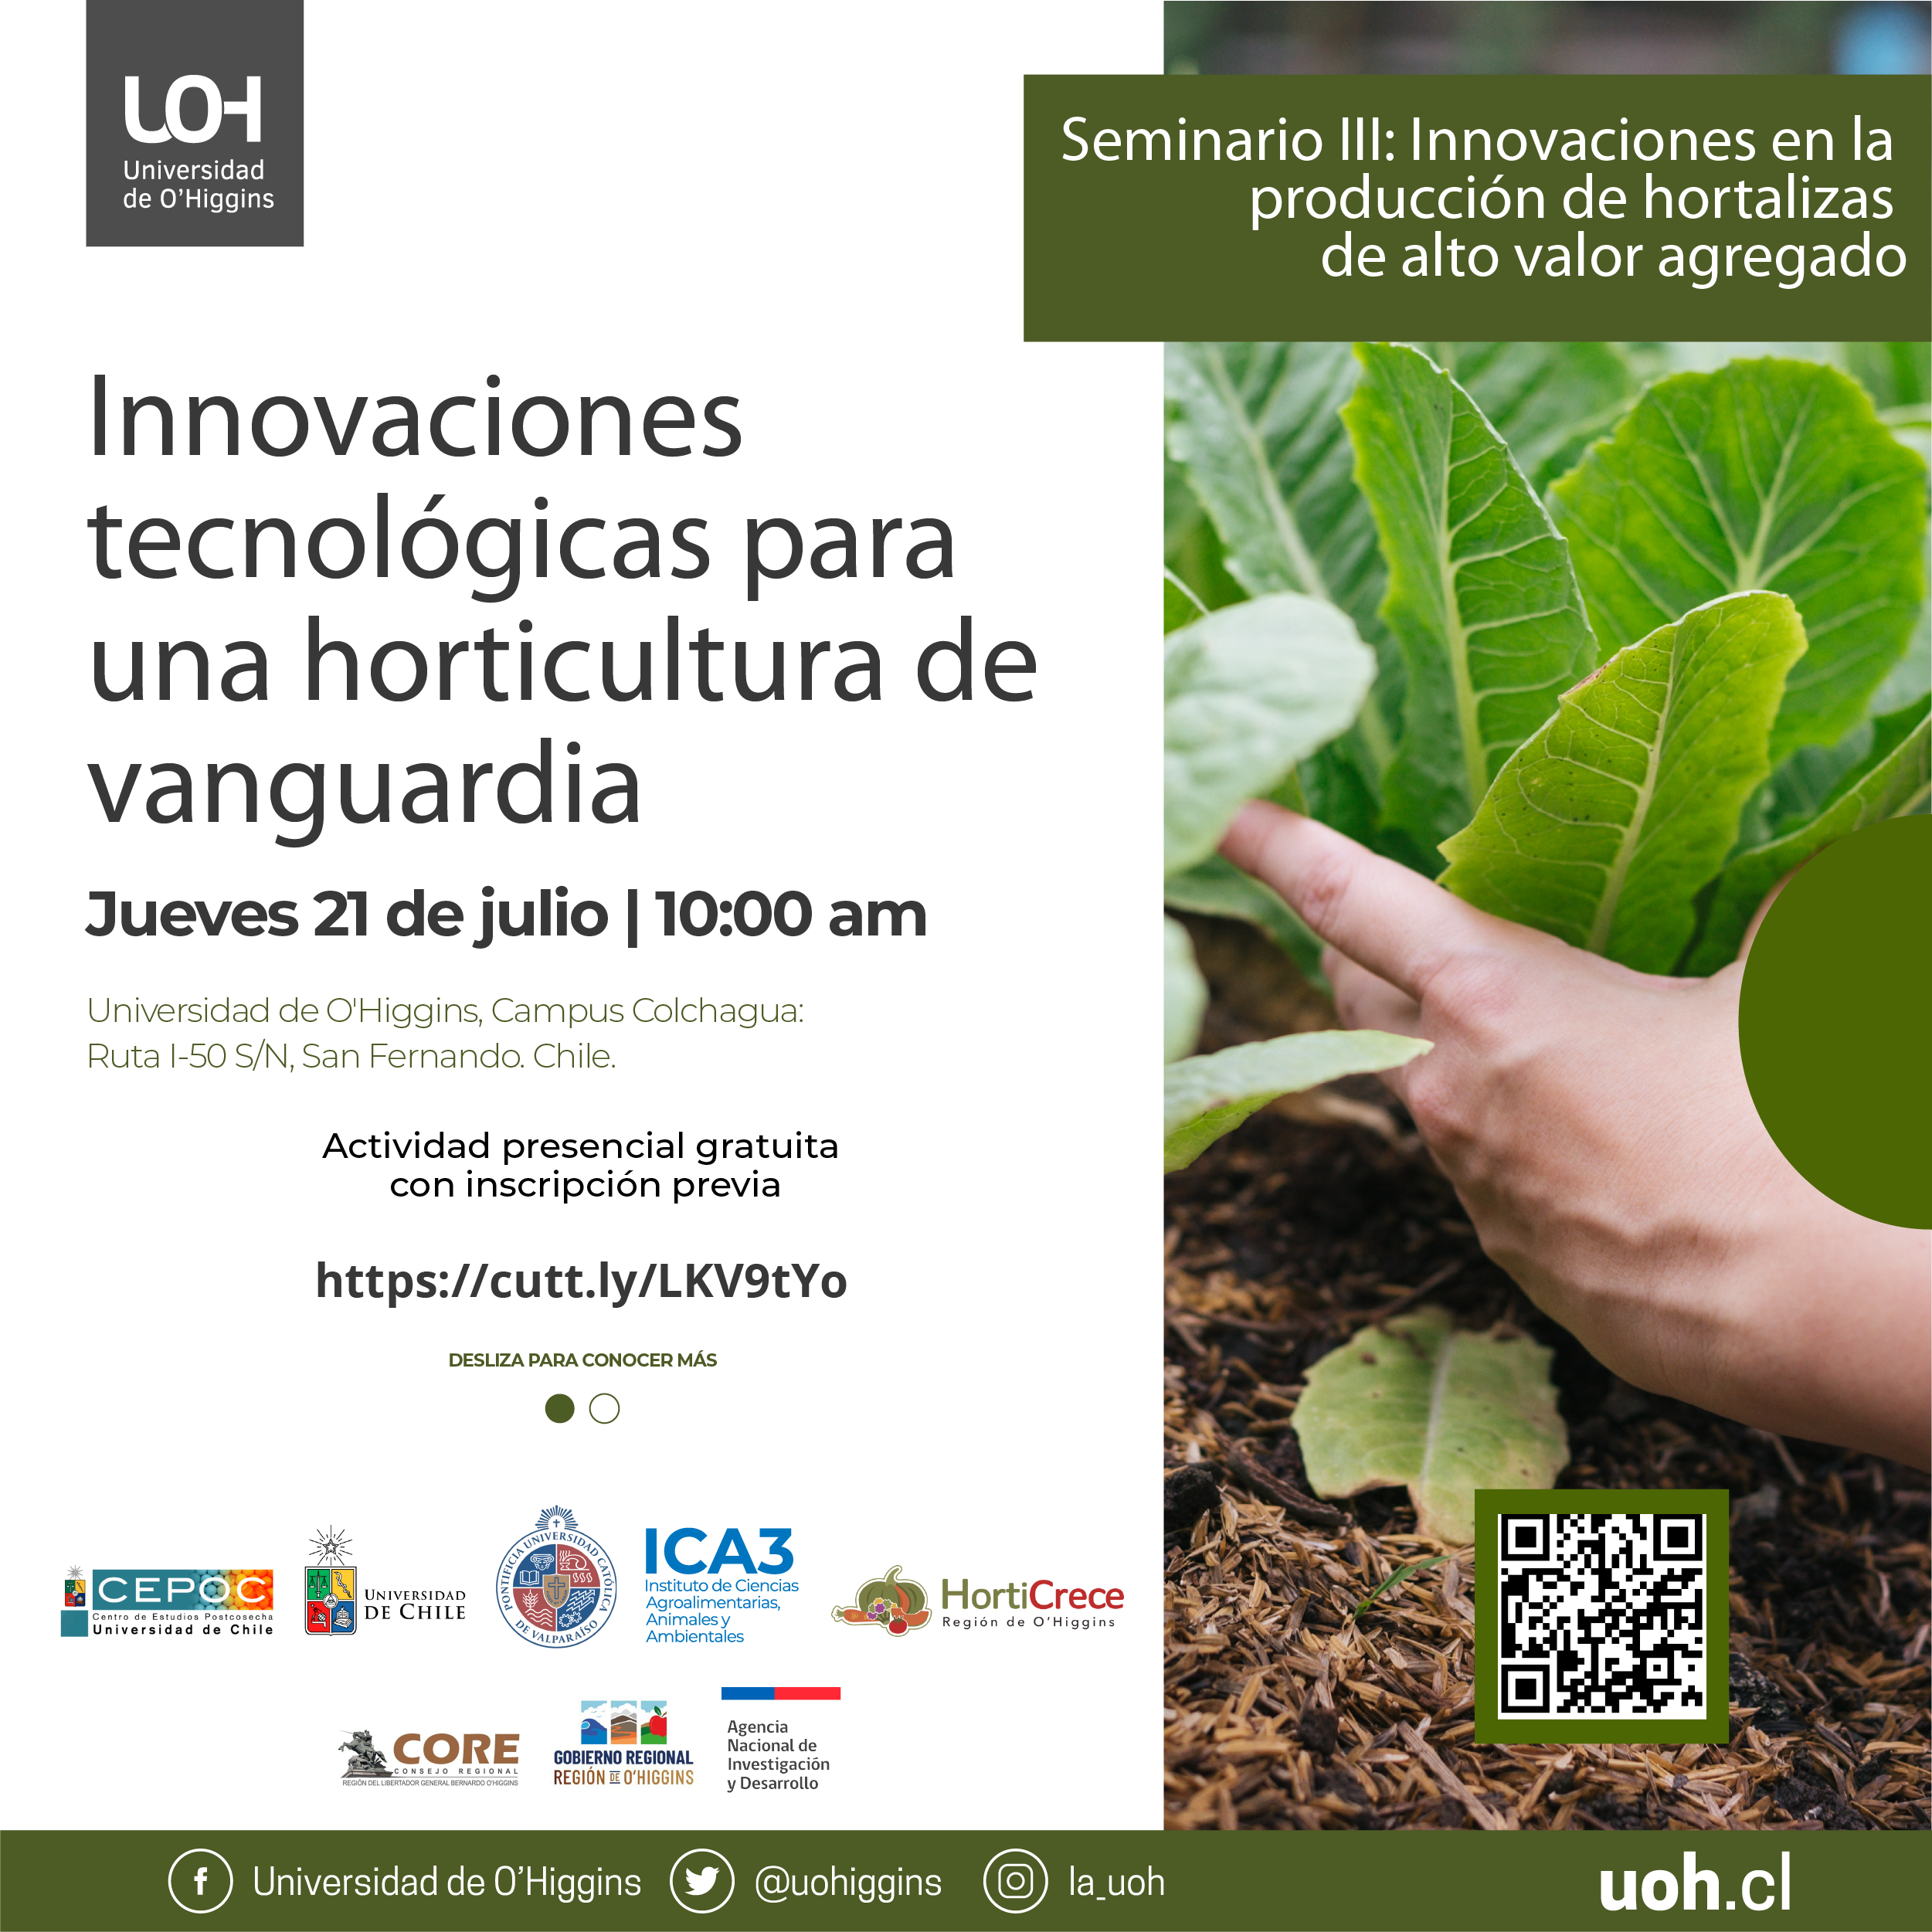 Seminario III: Innovaciones en la producción de hortalizas de alto valor agregado